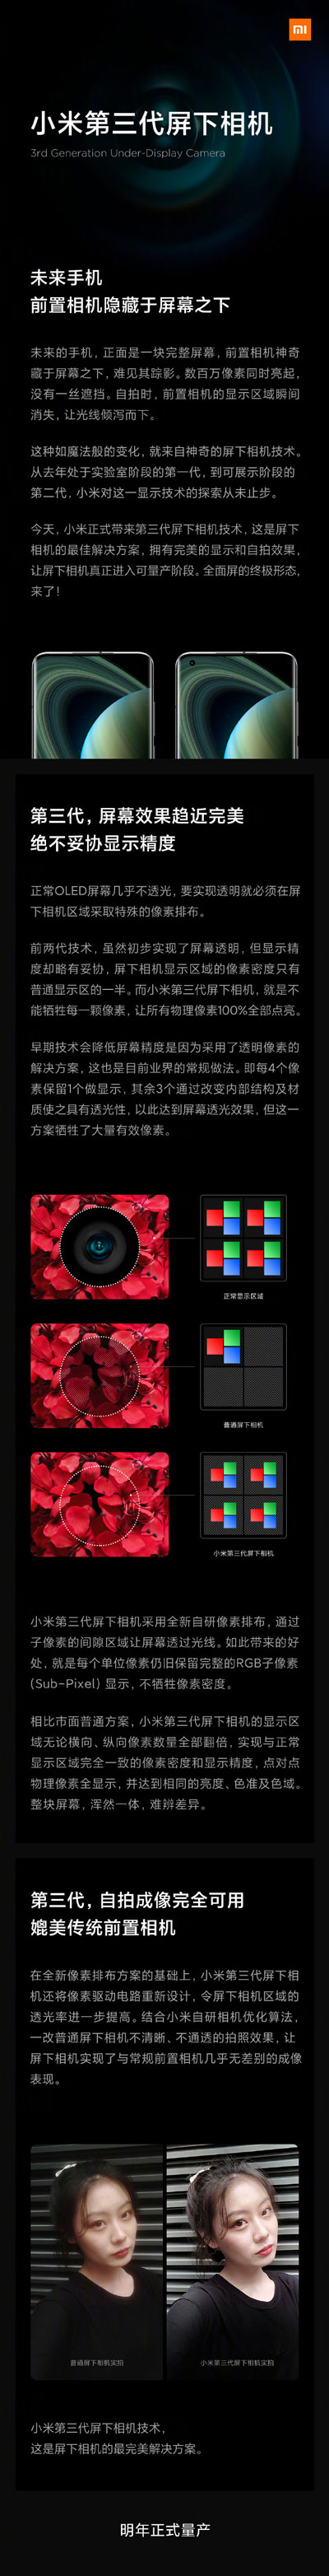 小米第三代屏下相机技术正式发布：全面屏终极形态,明年量产